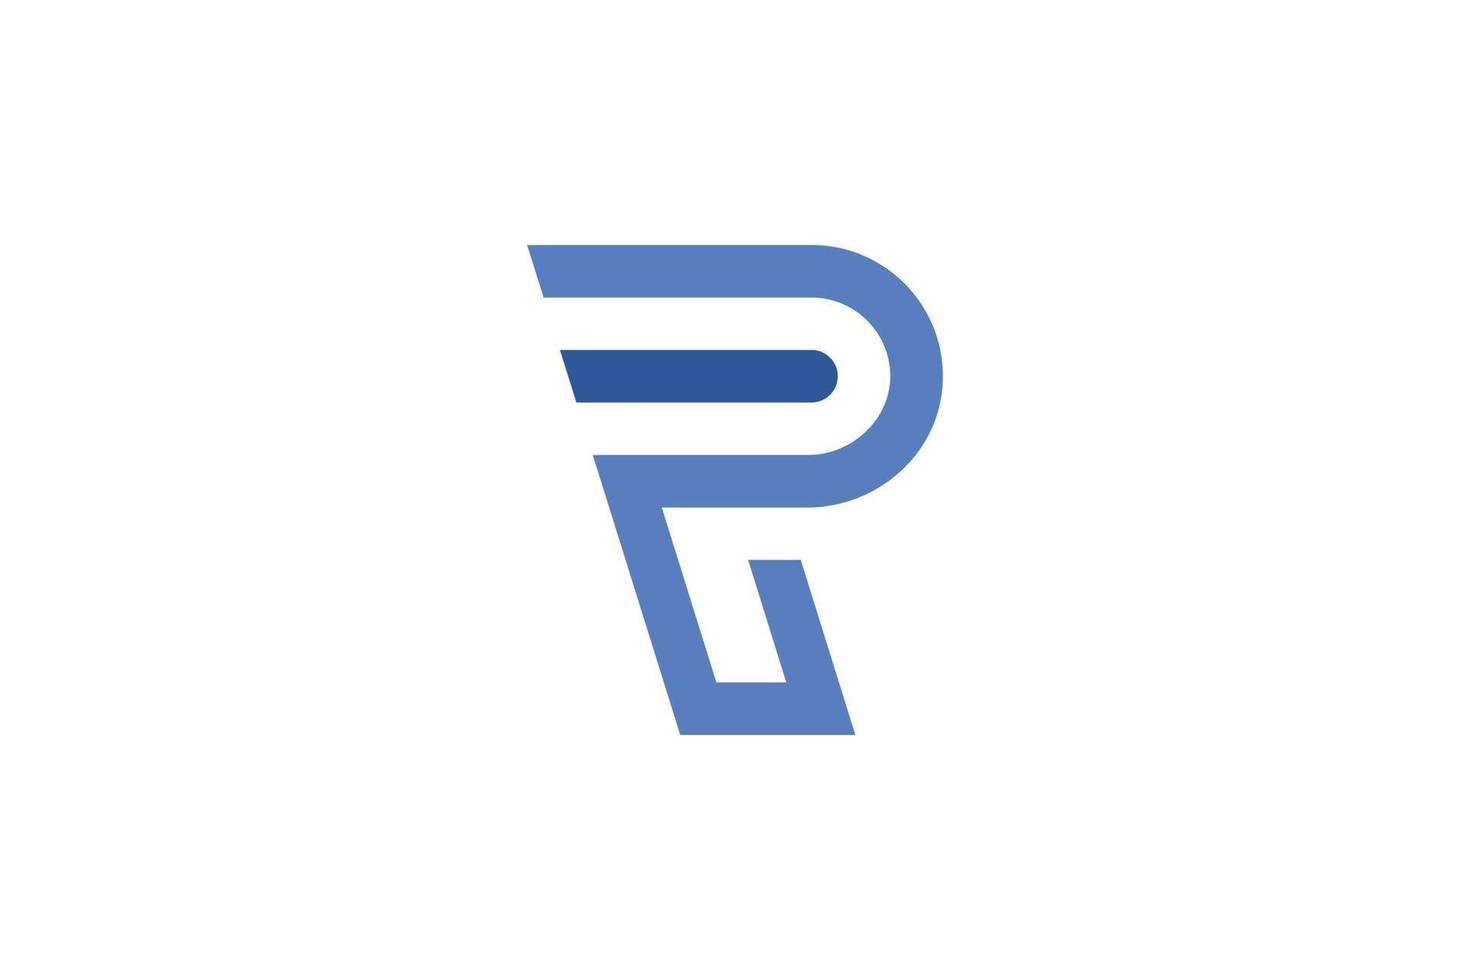 astratto r lettera logo vettore